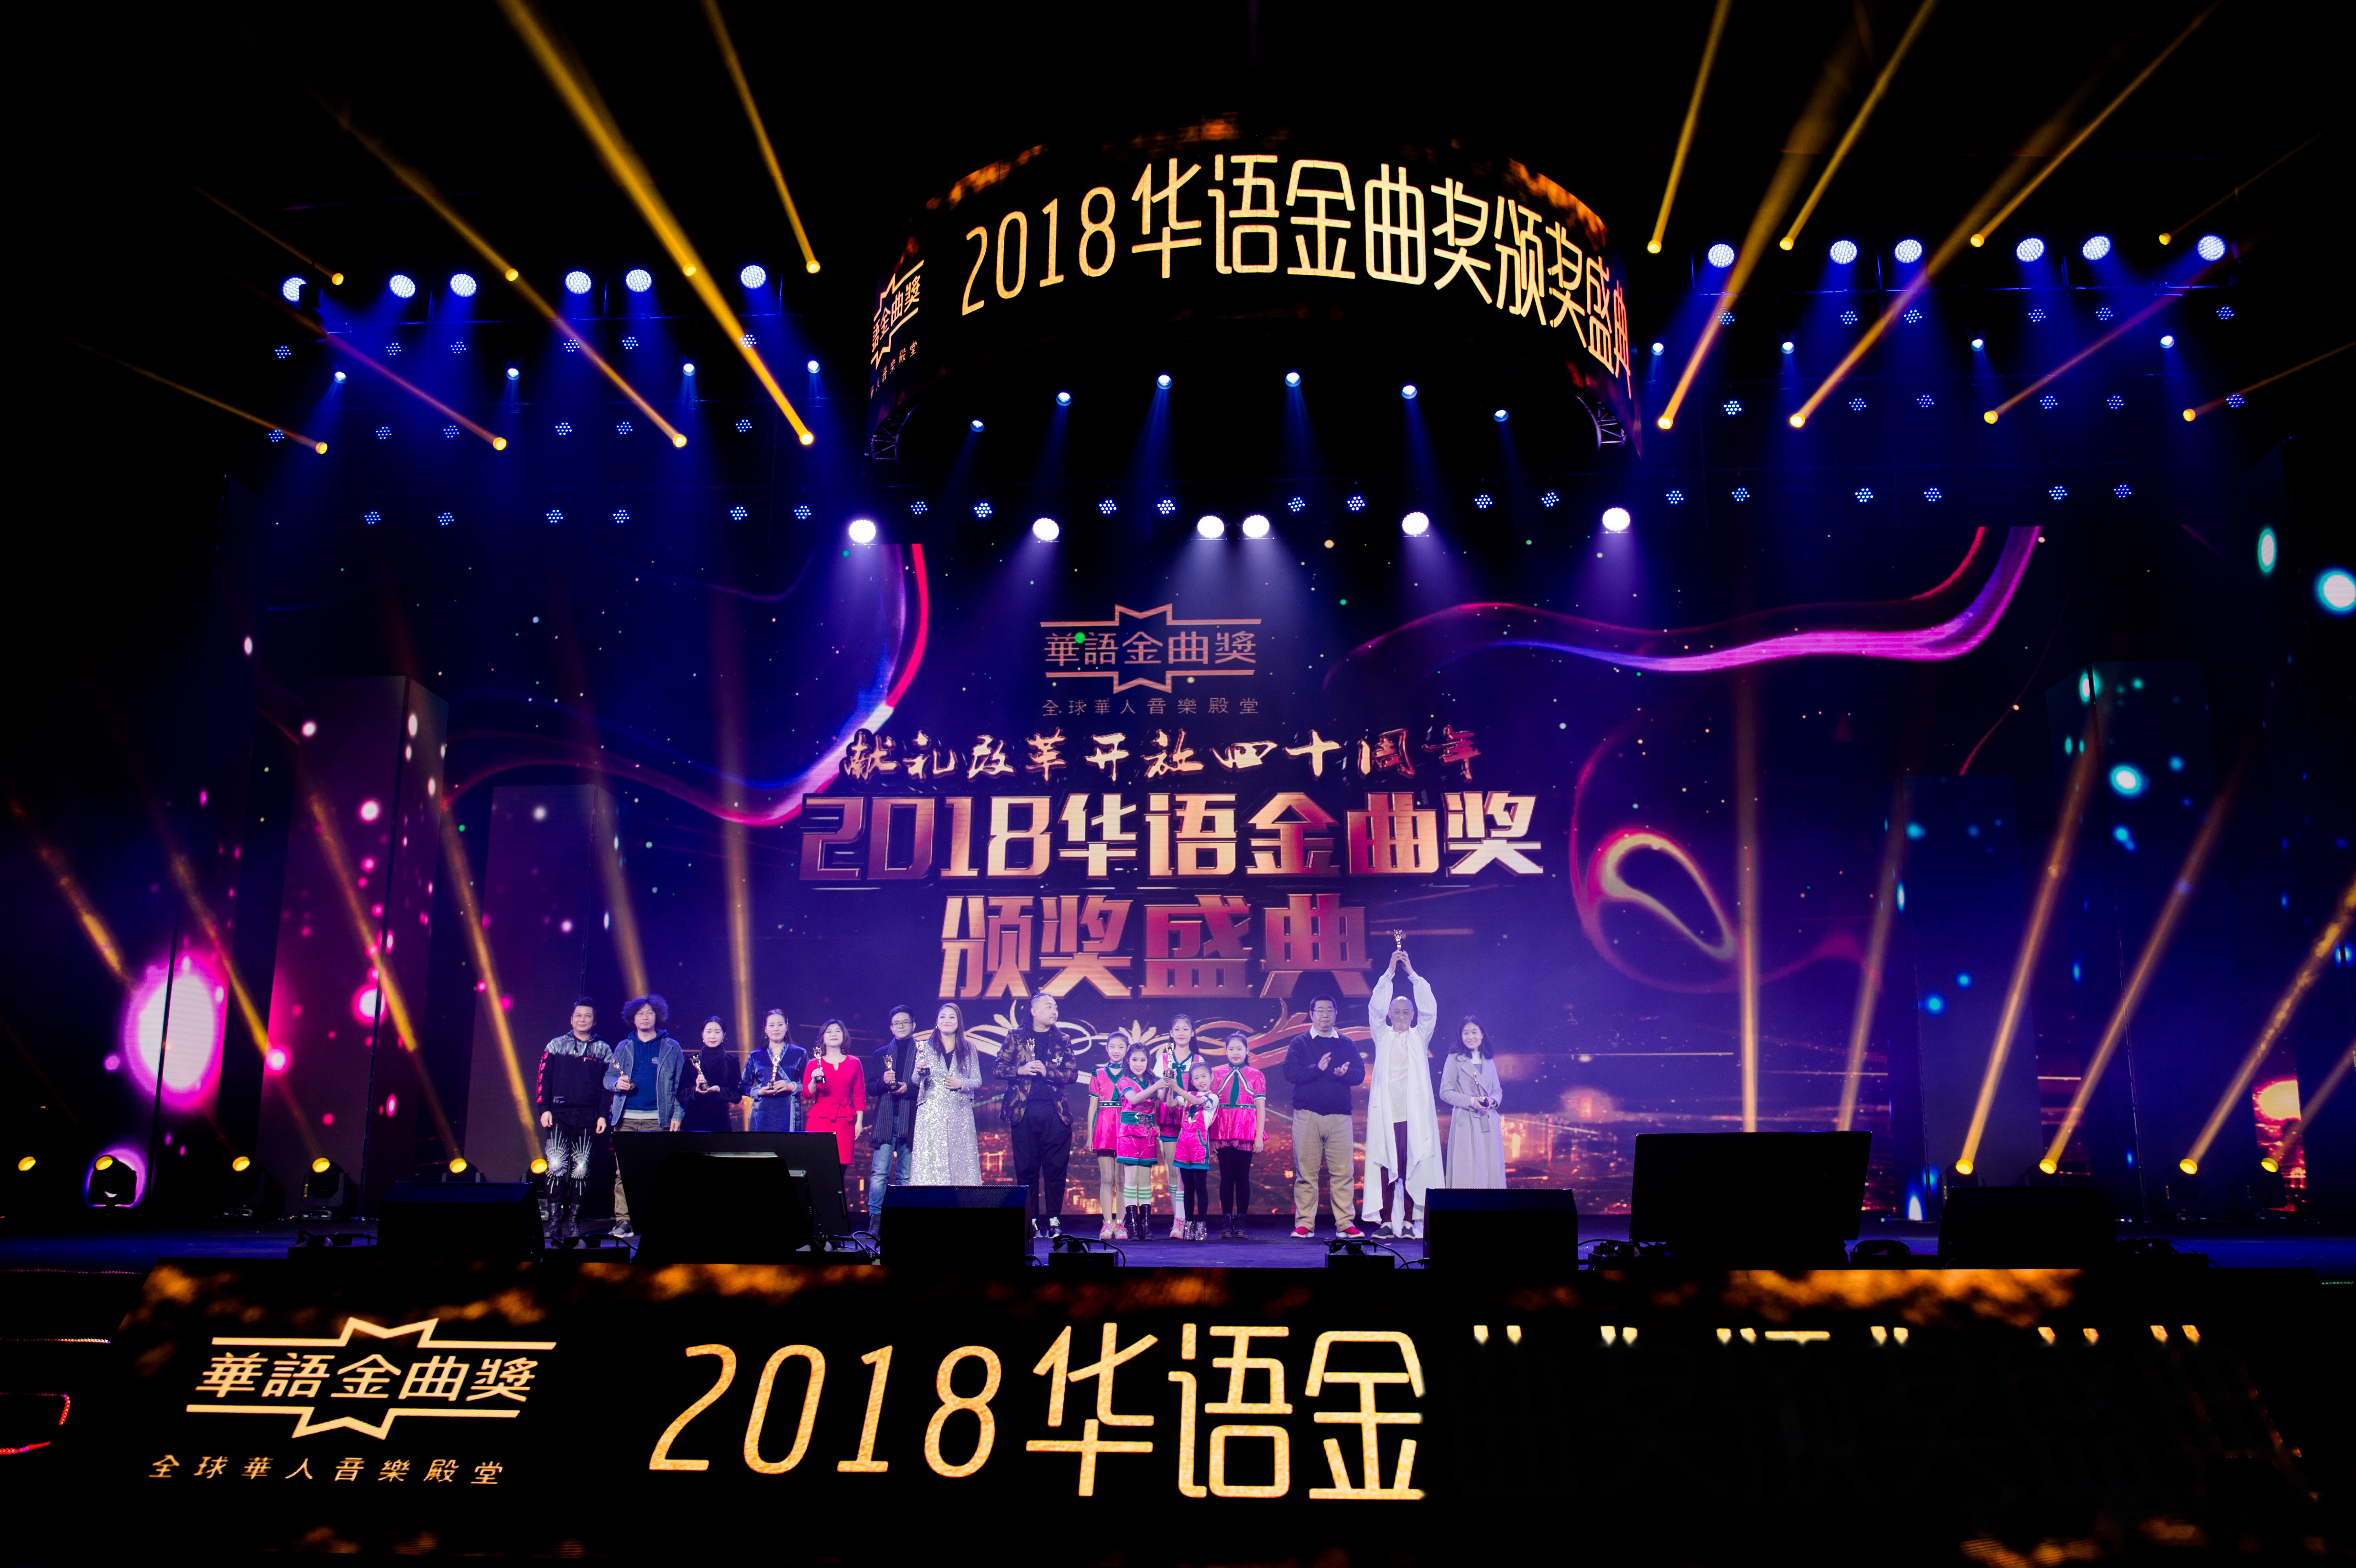 中国新世纪音乐家梁旭新专辑《六度》斩获2018华语金曲奖年度最佳new